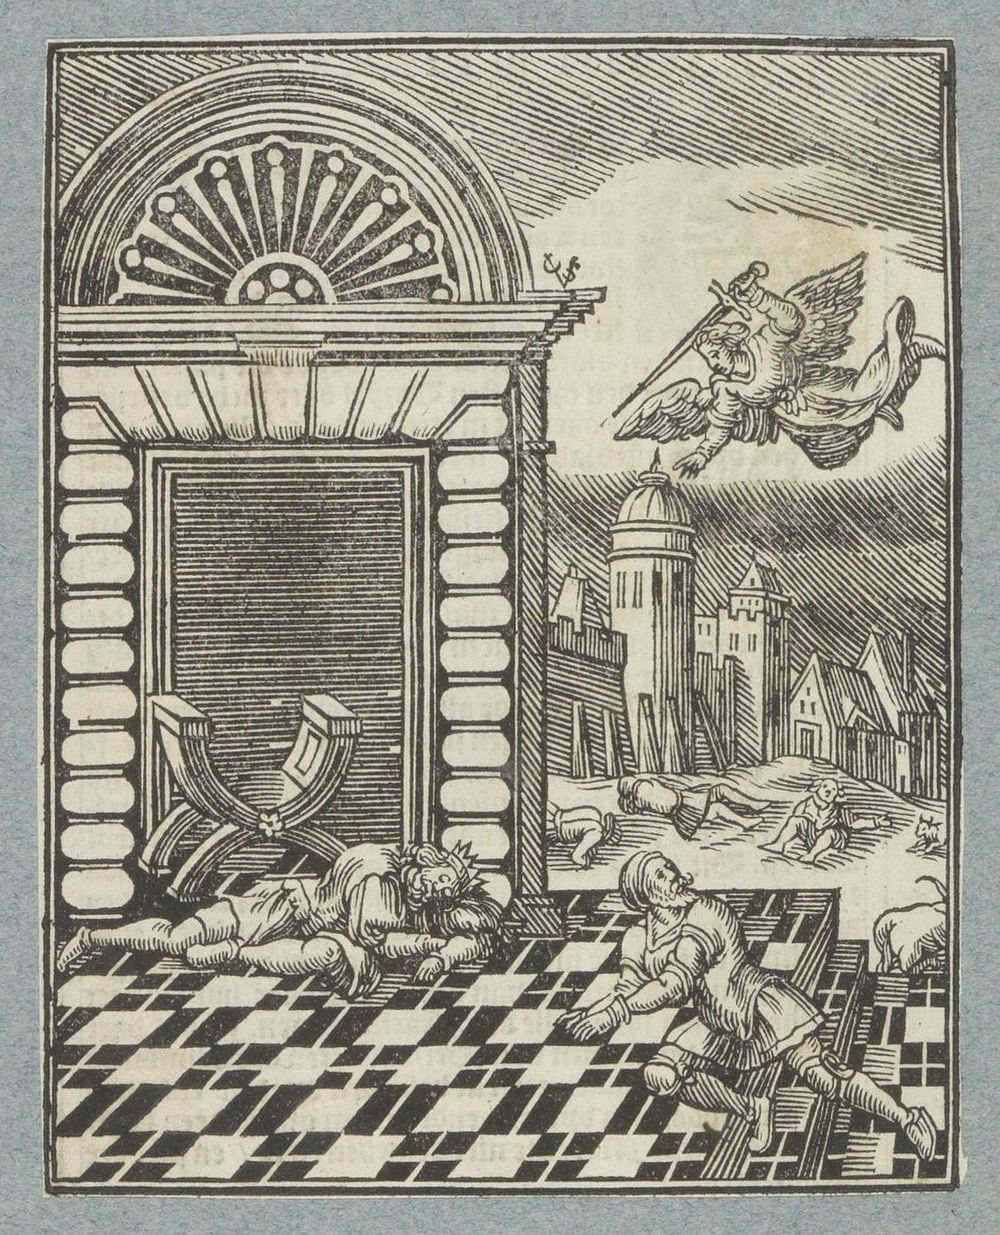 Tiende plaag van Egypte (1645 - 1646) by Christoffel van Sichem II, Christoffel van Sichem III and Pieter Jacobsz Paets